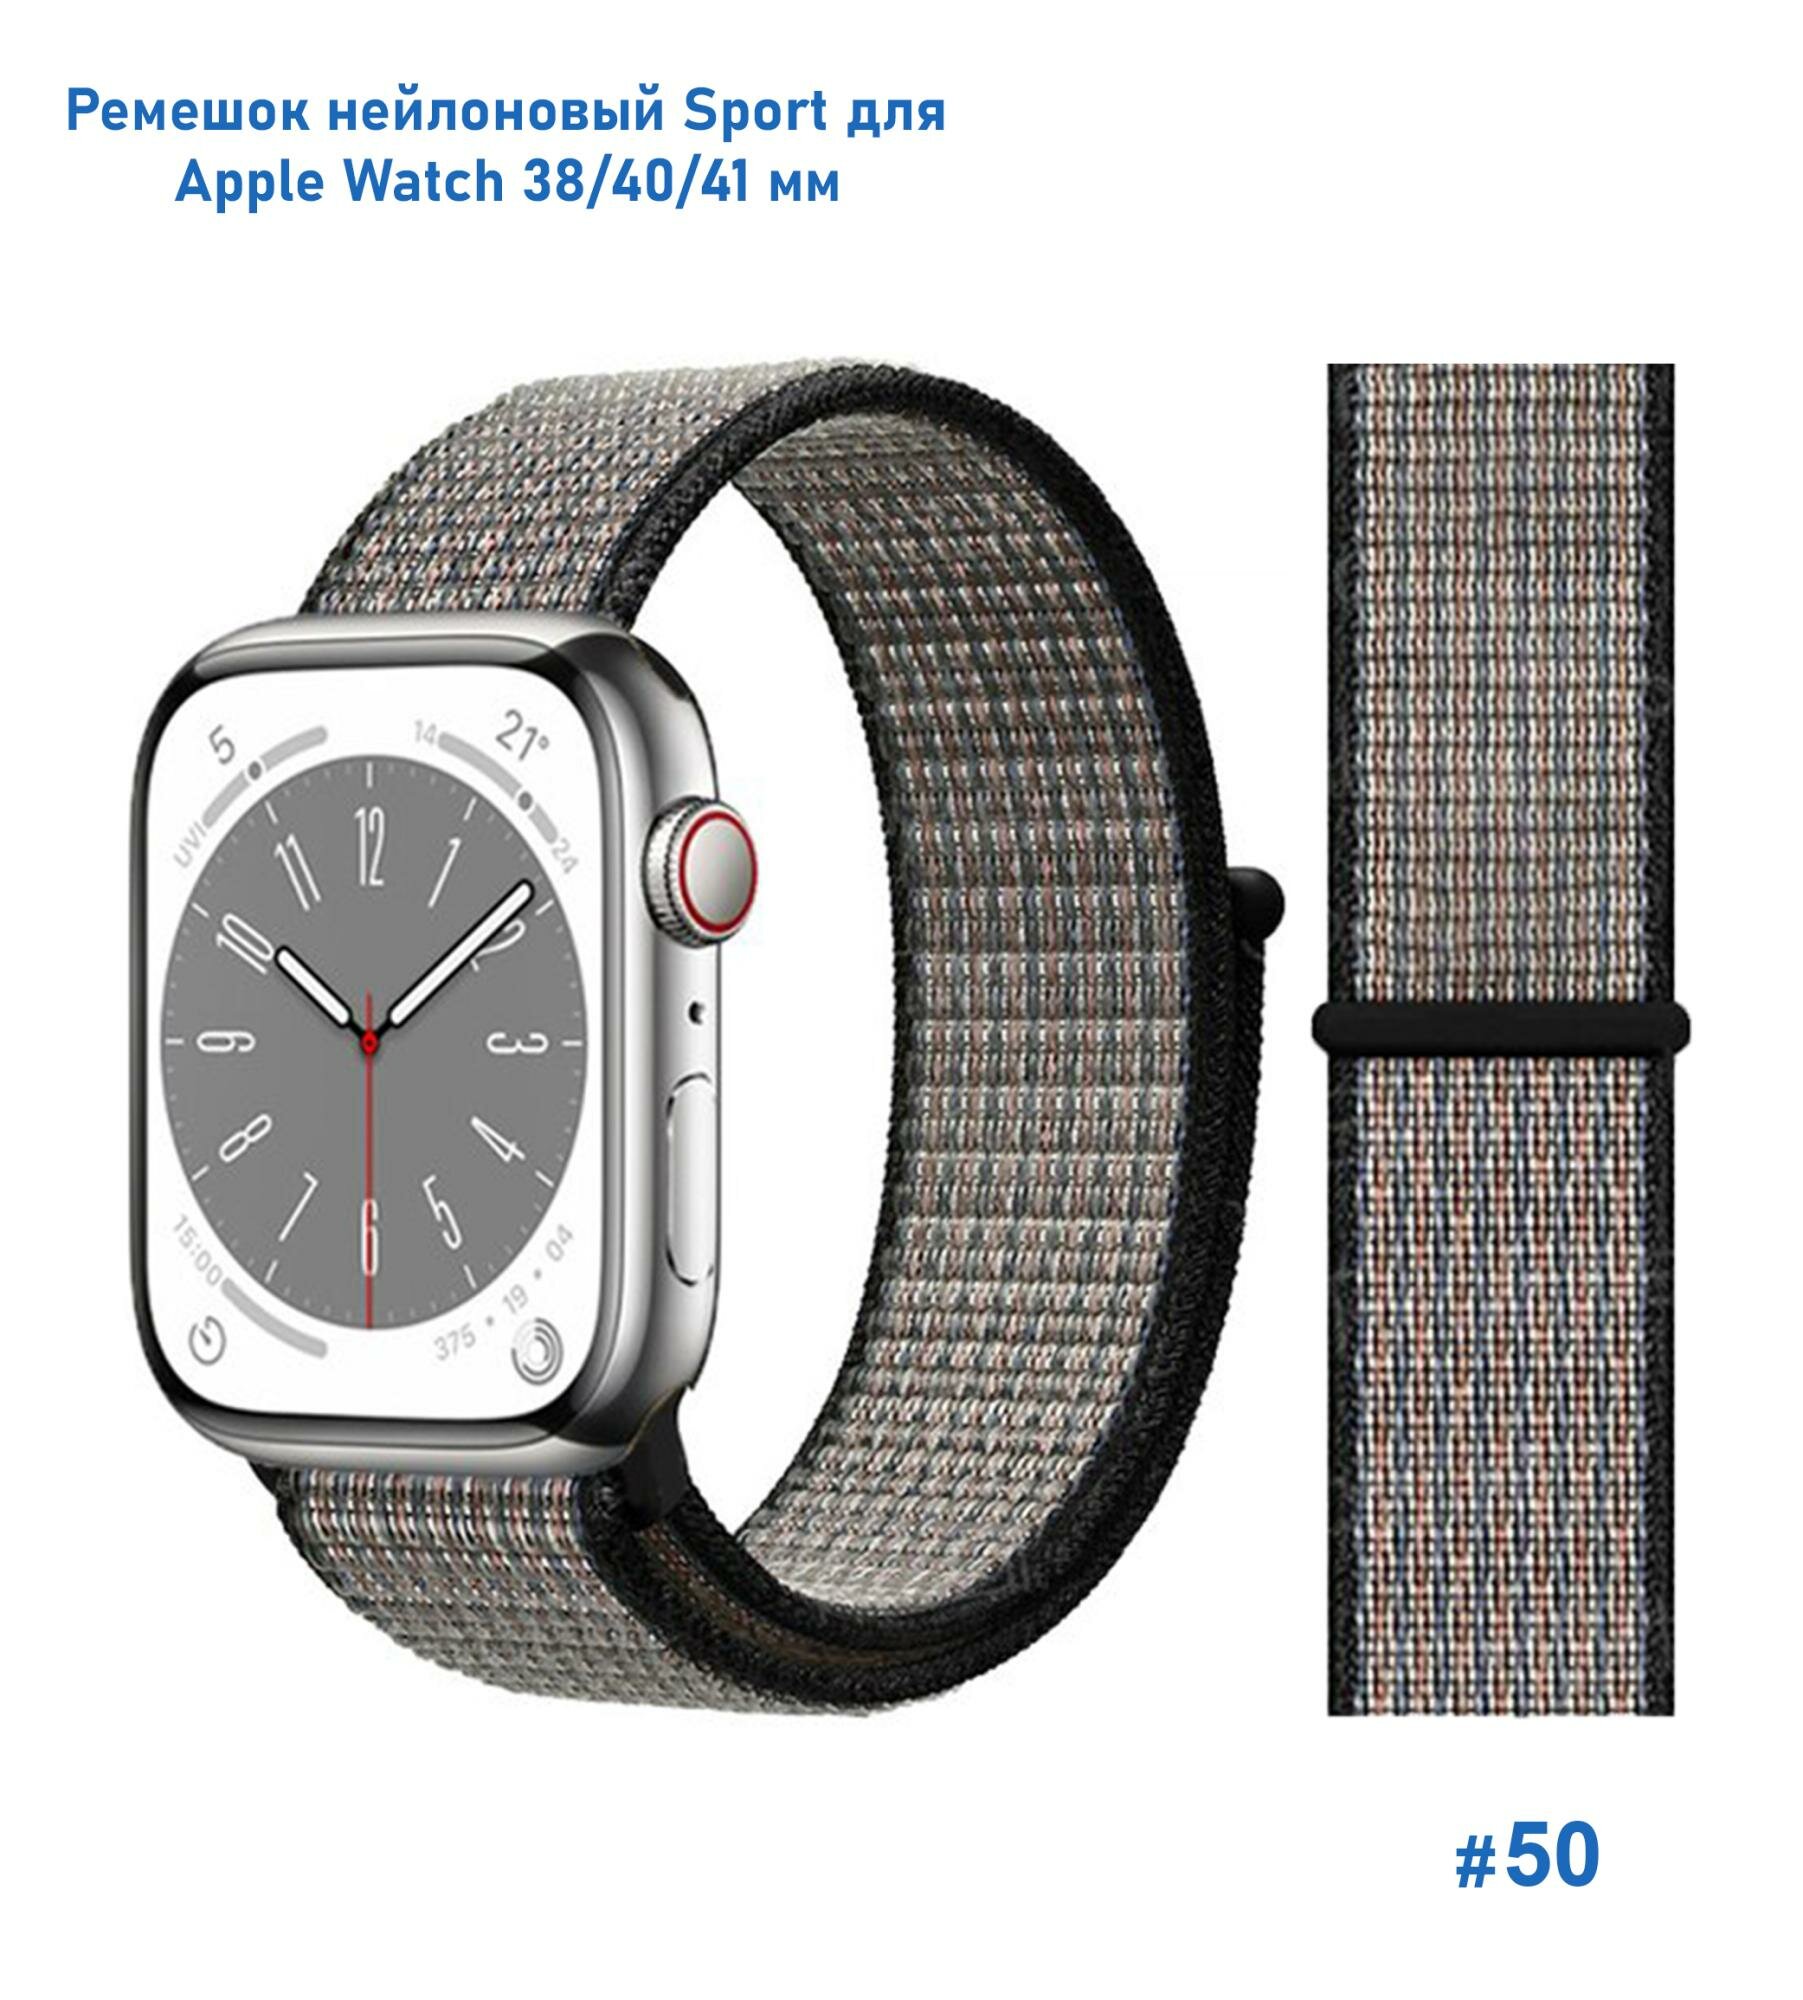 Ремешок нейлоновый для Apple Watch 38/40мм (17) нектариновый на липучке